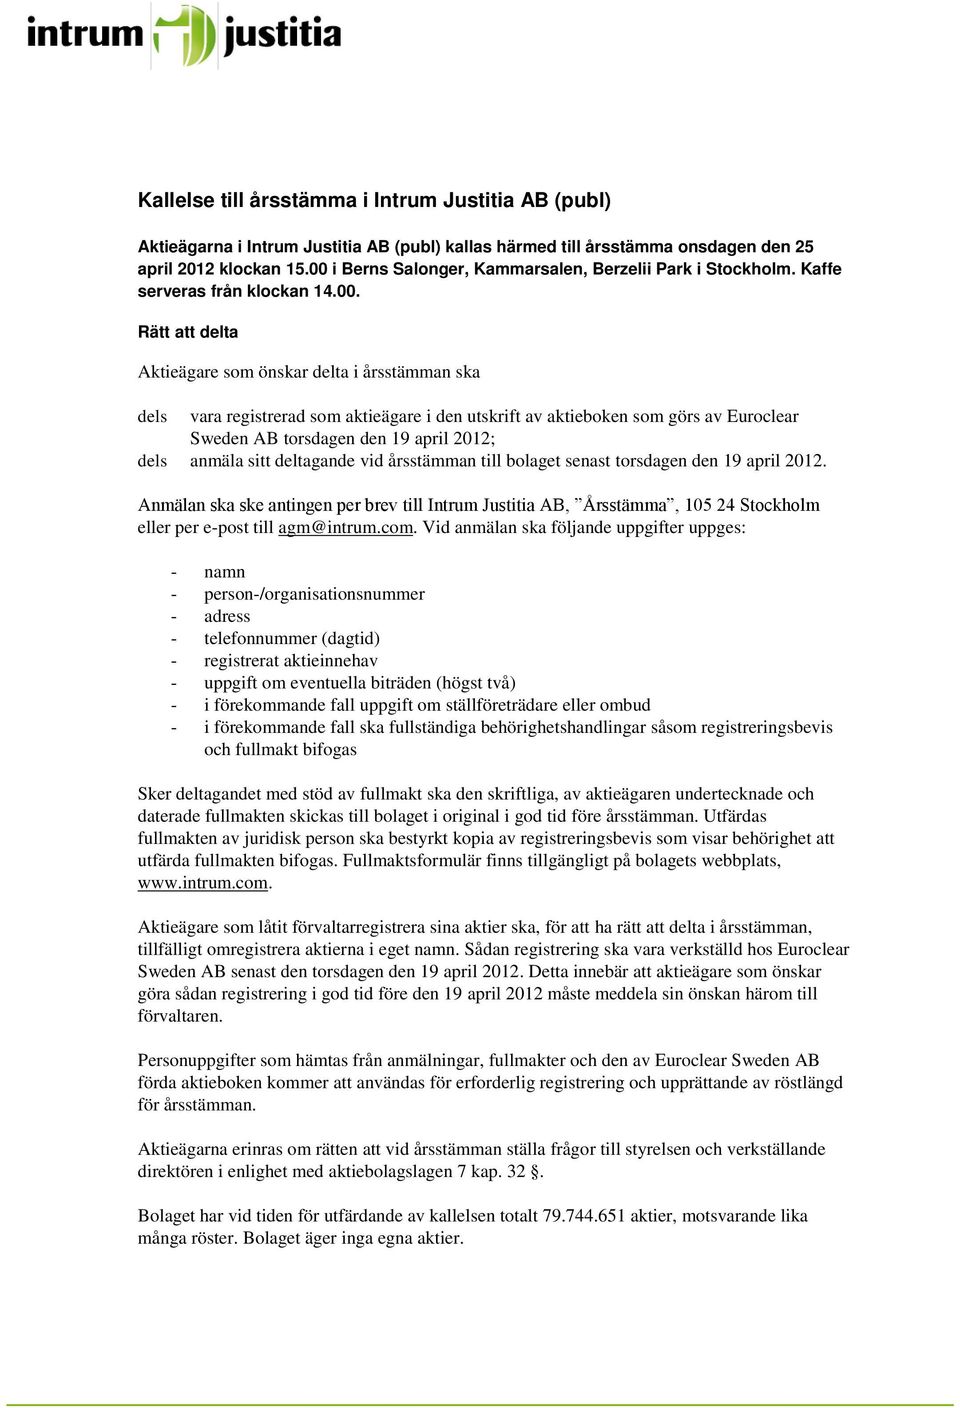 utskrift av aktieboken som görs av Euroclear Sweden AB torsdagen den 19 april 2012; dels anmäla sitt deltagande vid årsstämman till bolaget senast torsdagen den 19 april 2012.